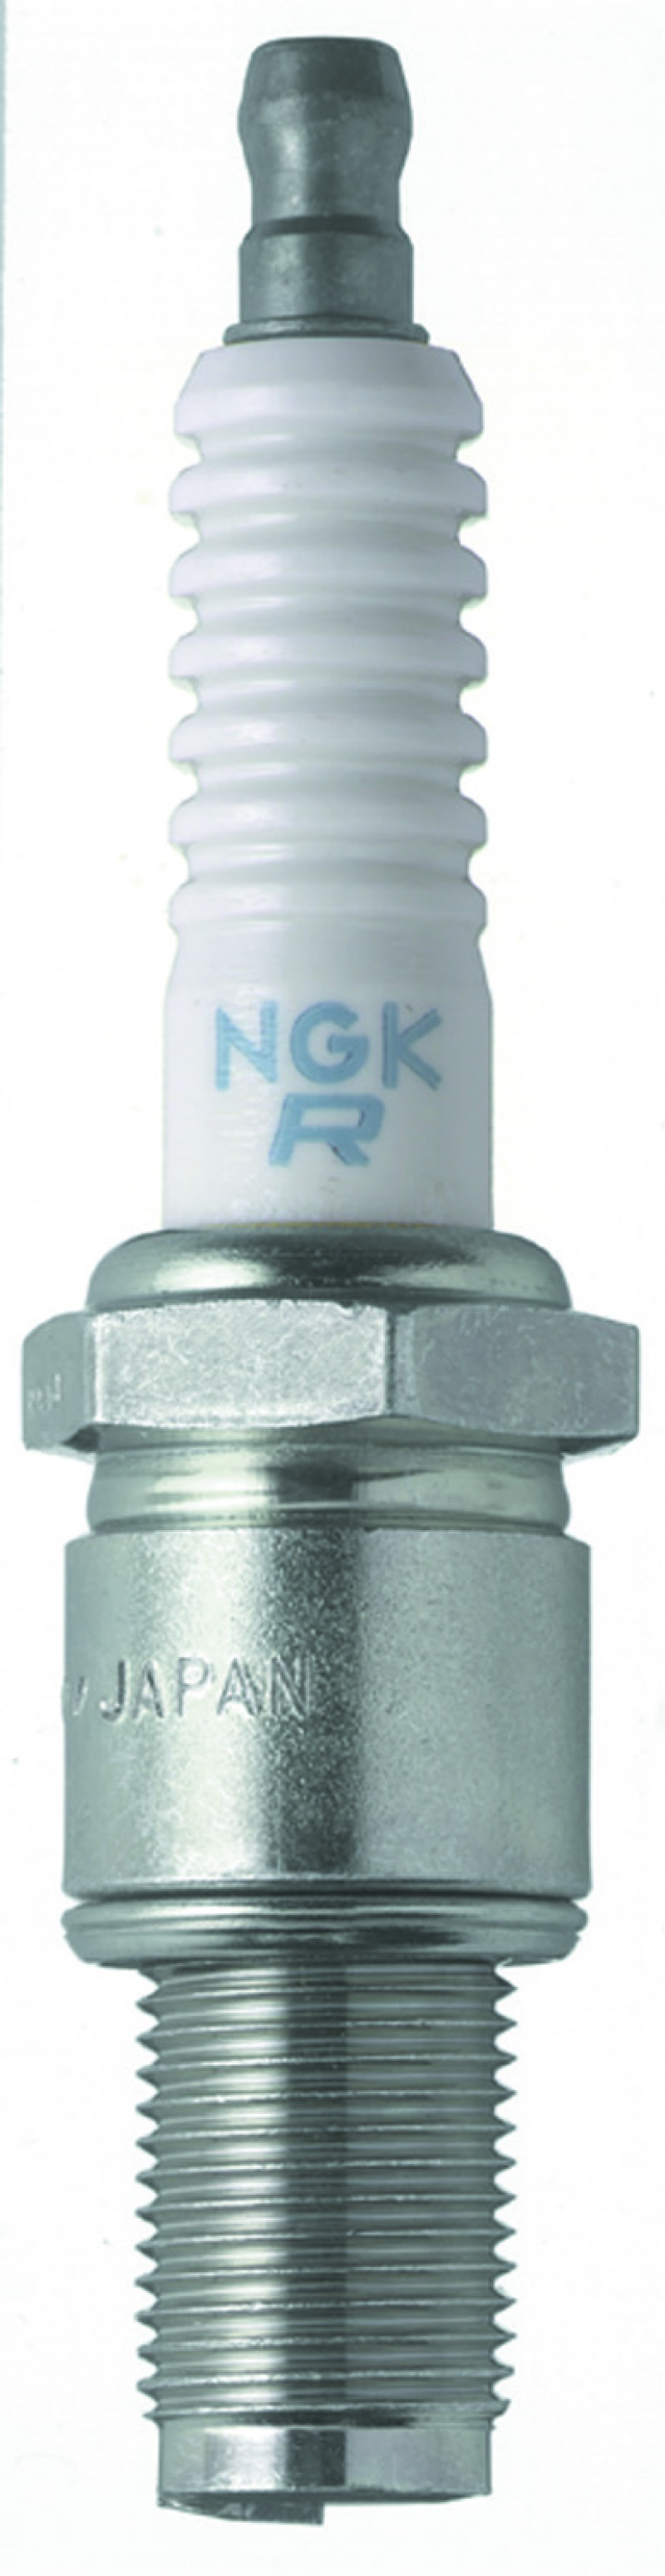 NGK Racing Spark Plug Box of 4 (R6725-11) - 4311